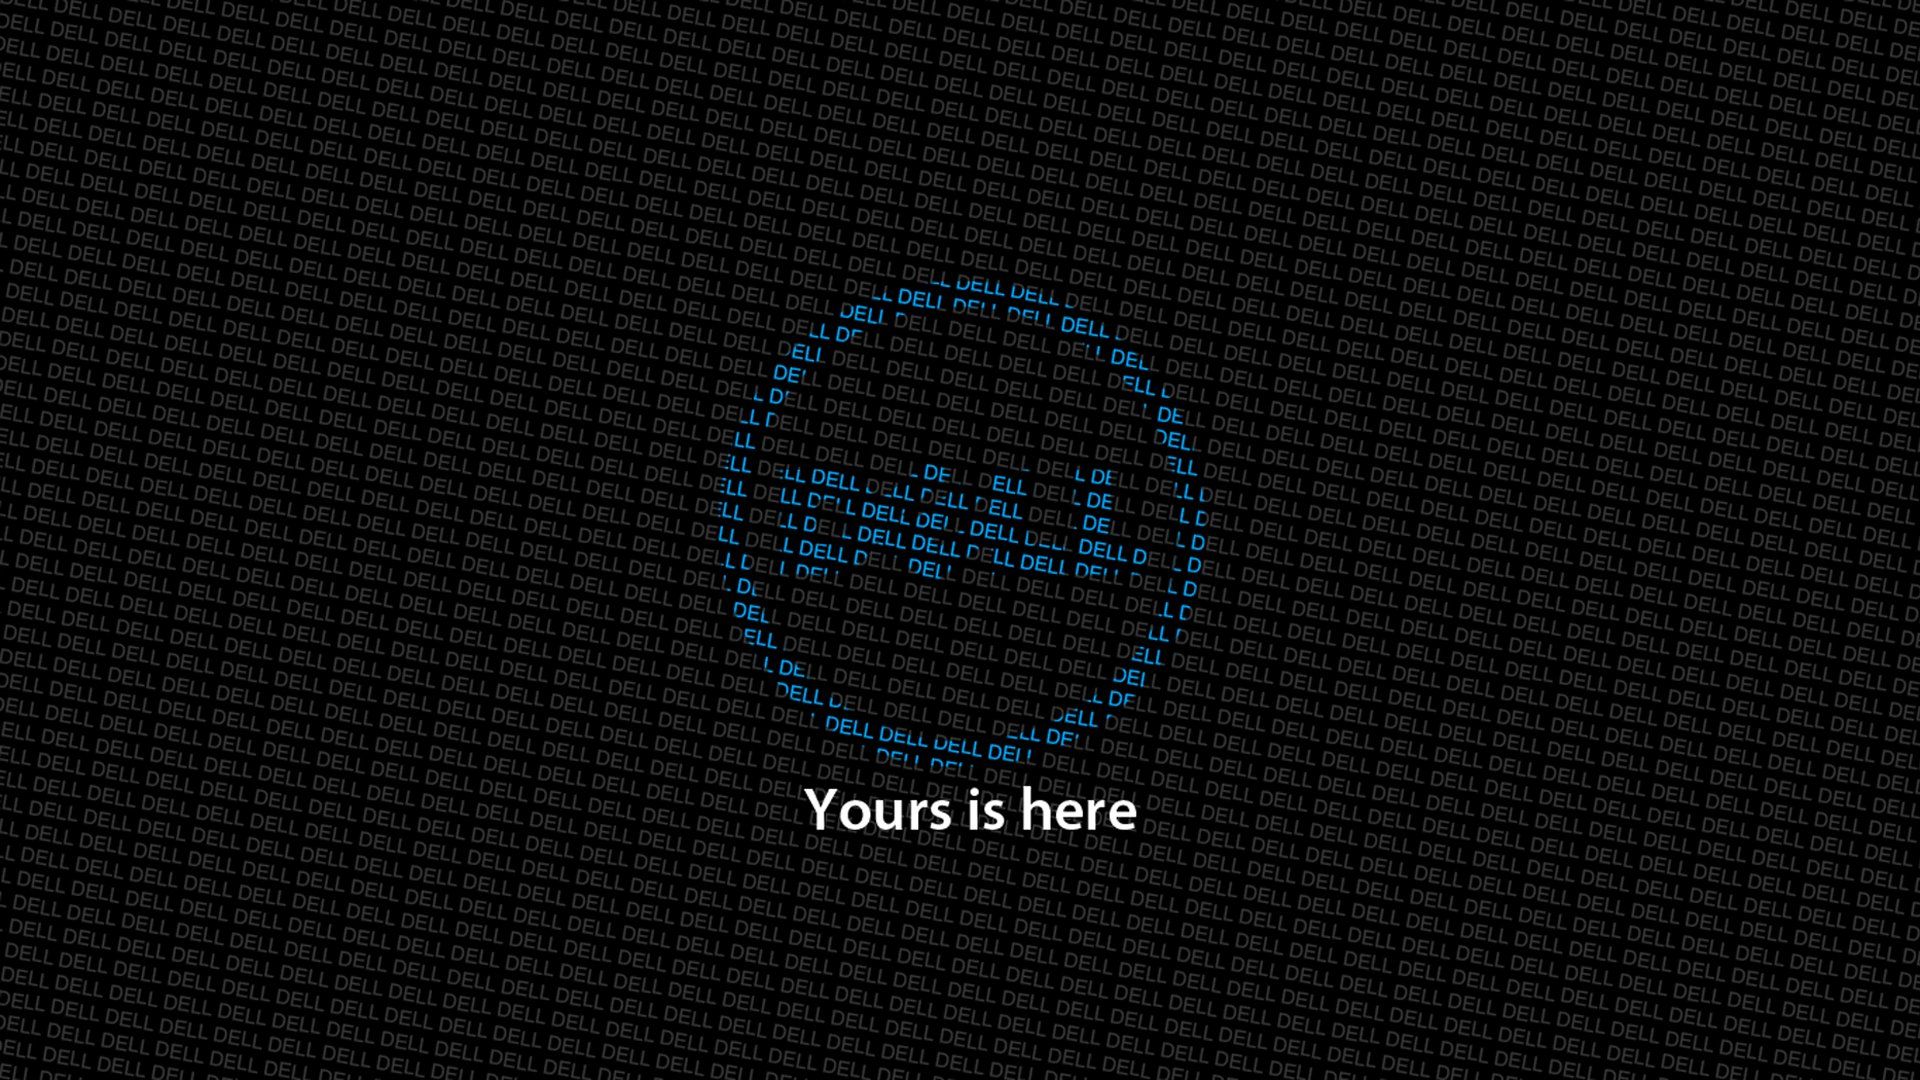 Dell Precision Wallpaper Free Dell Precision Background